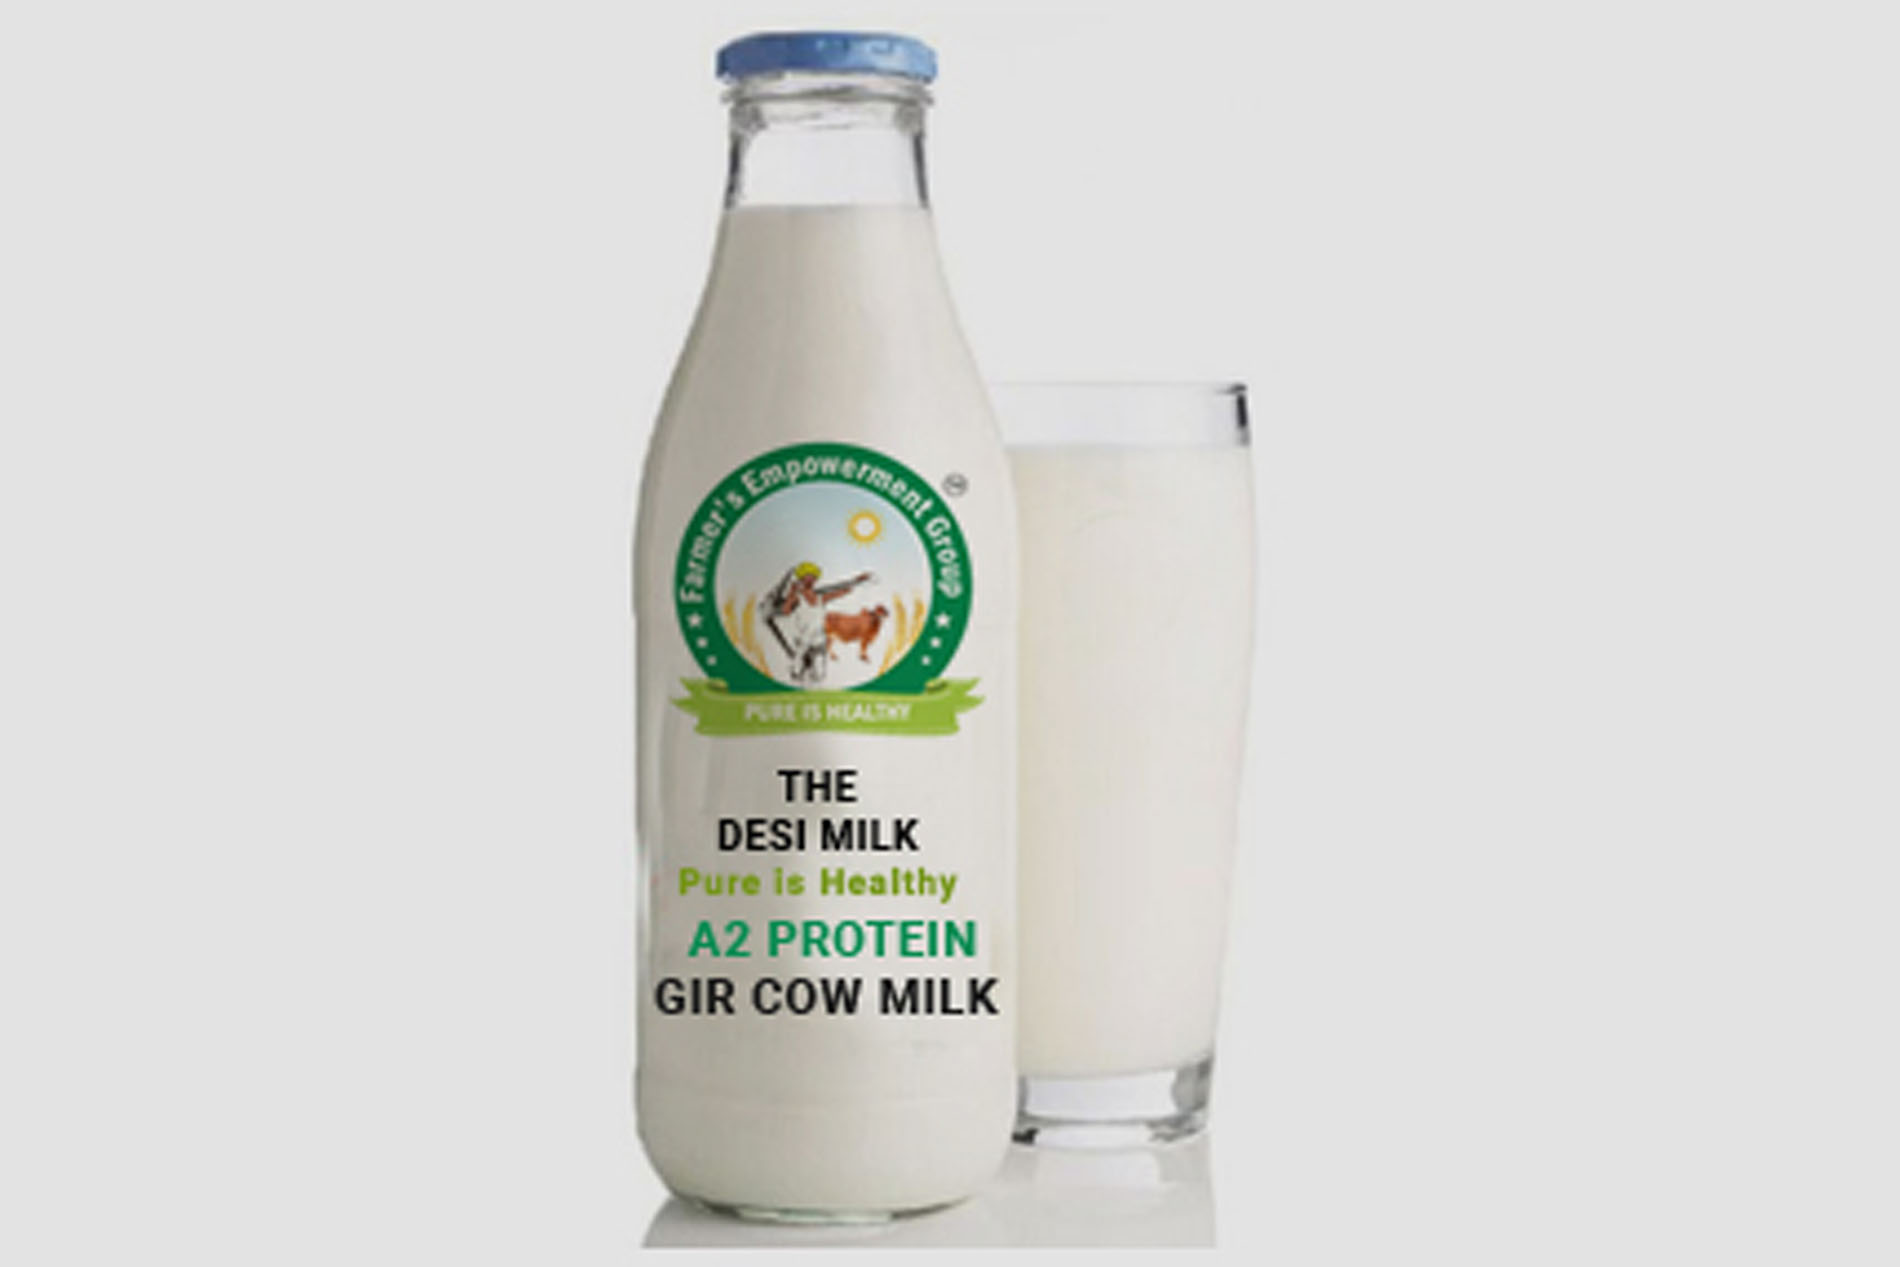 The Desi Milk